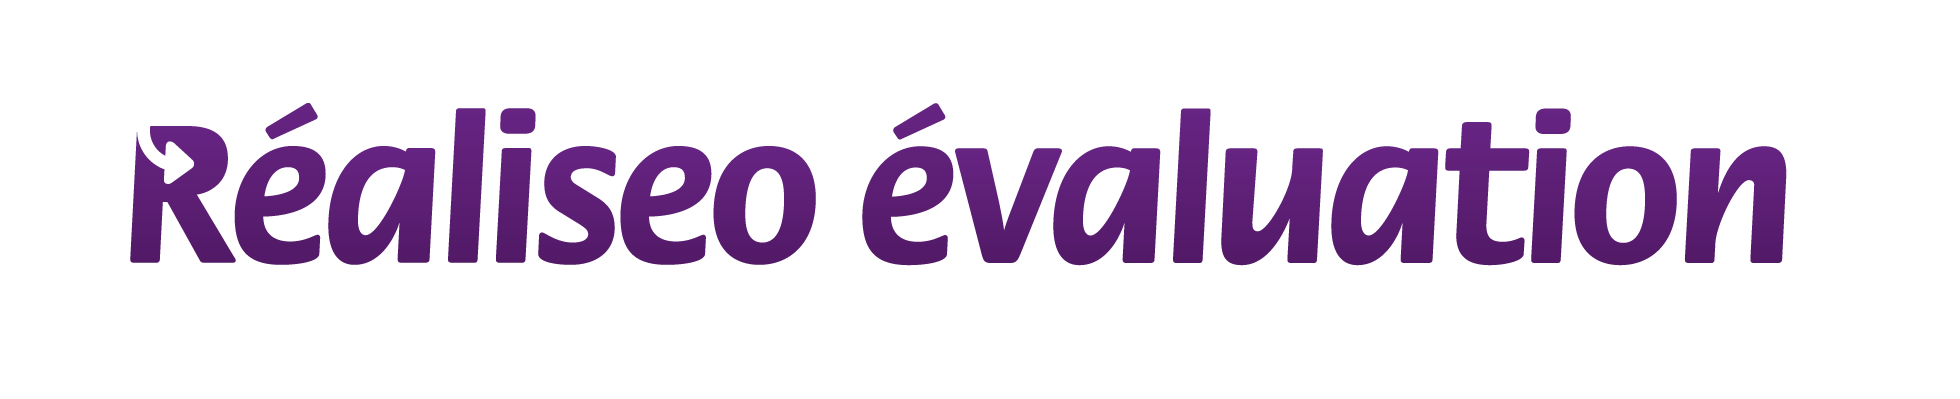 Réaliseo evaluation logo